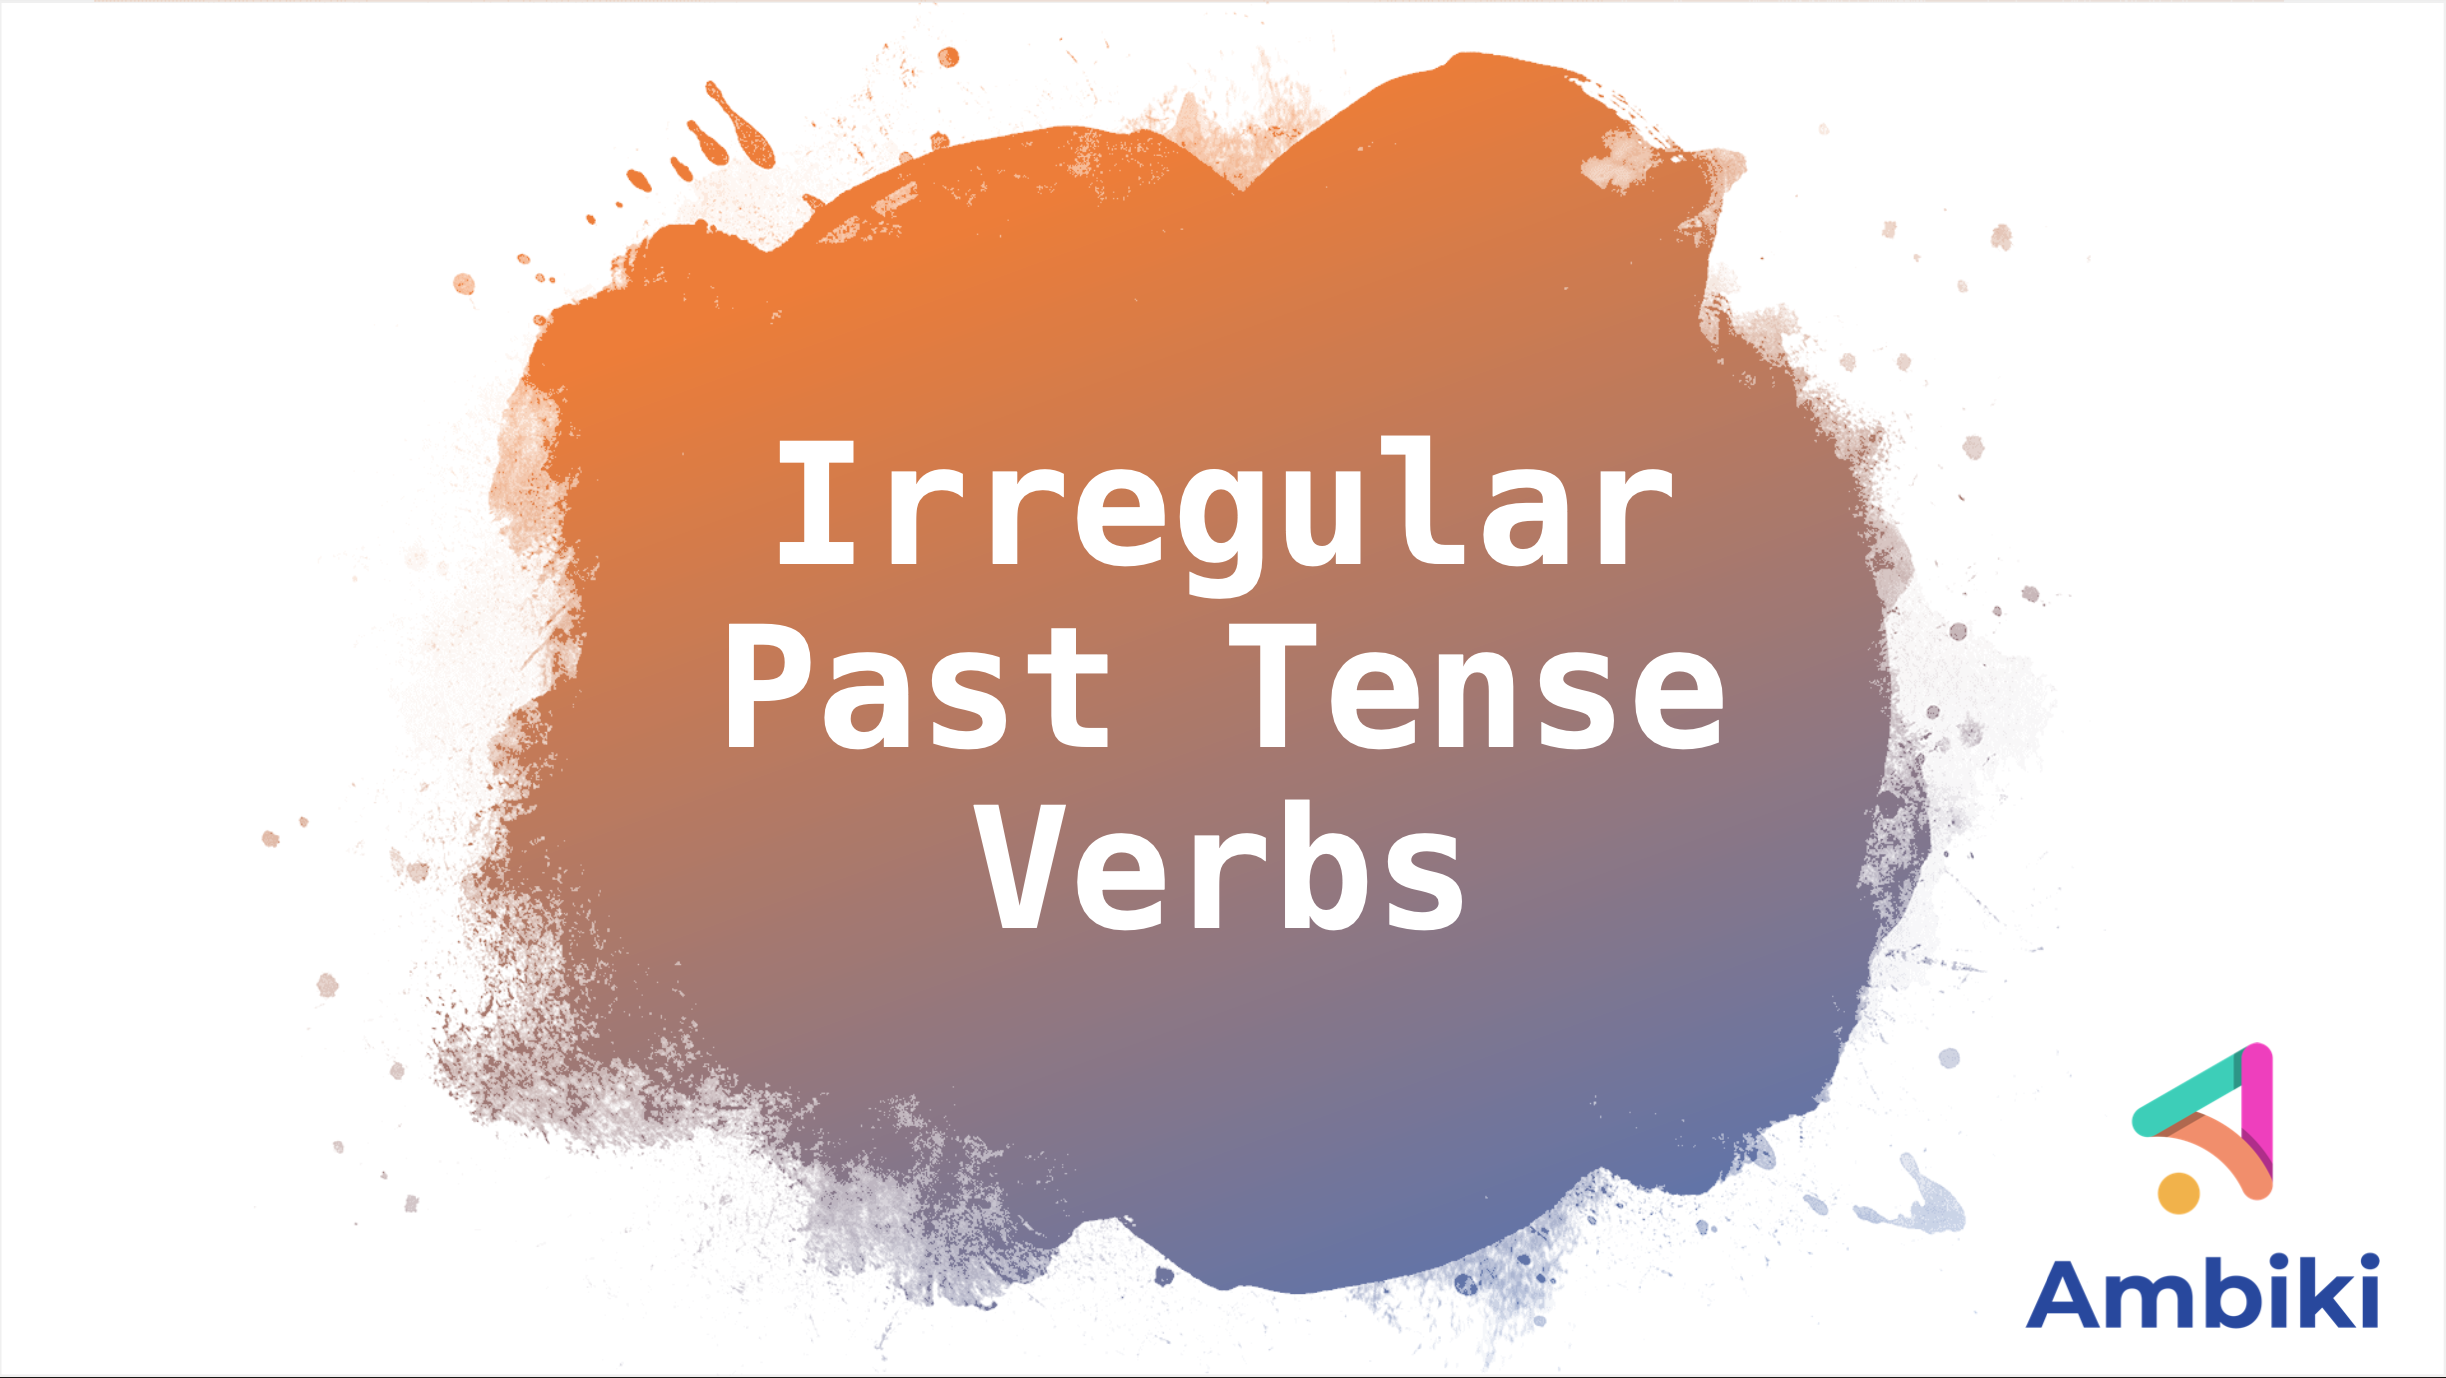 Irregular Past Tense Verbs image